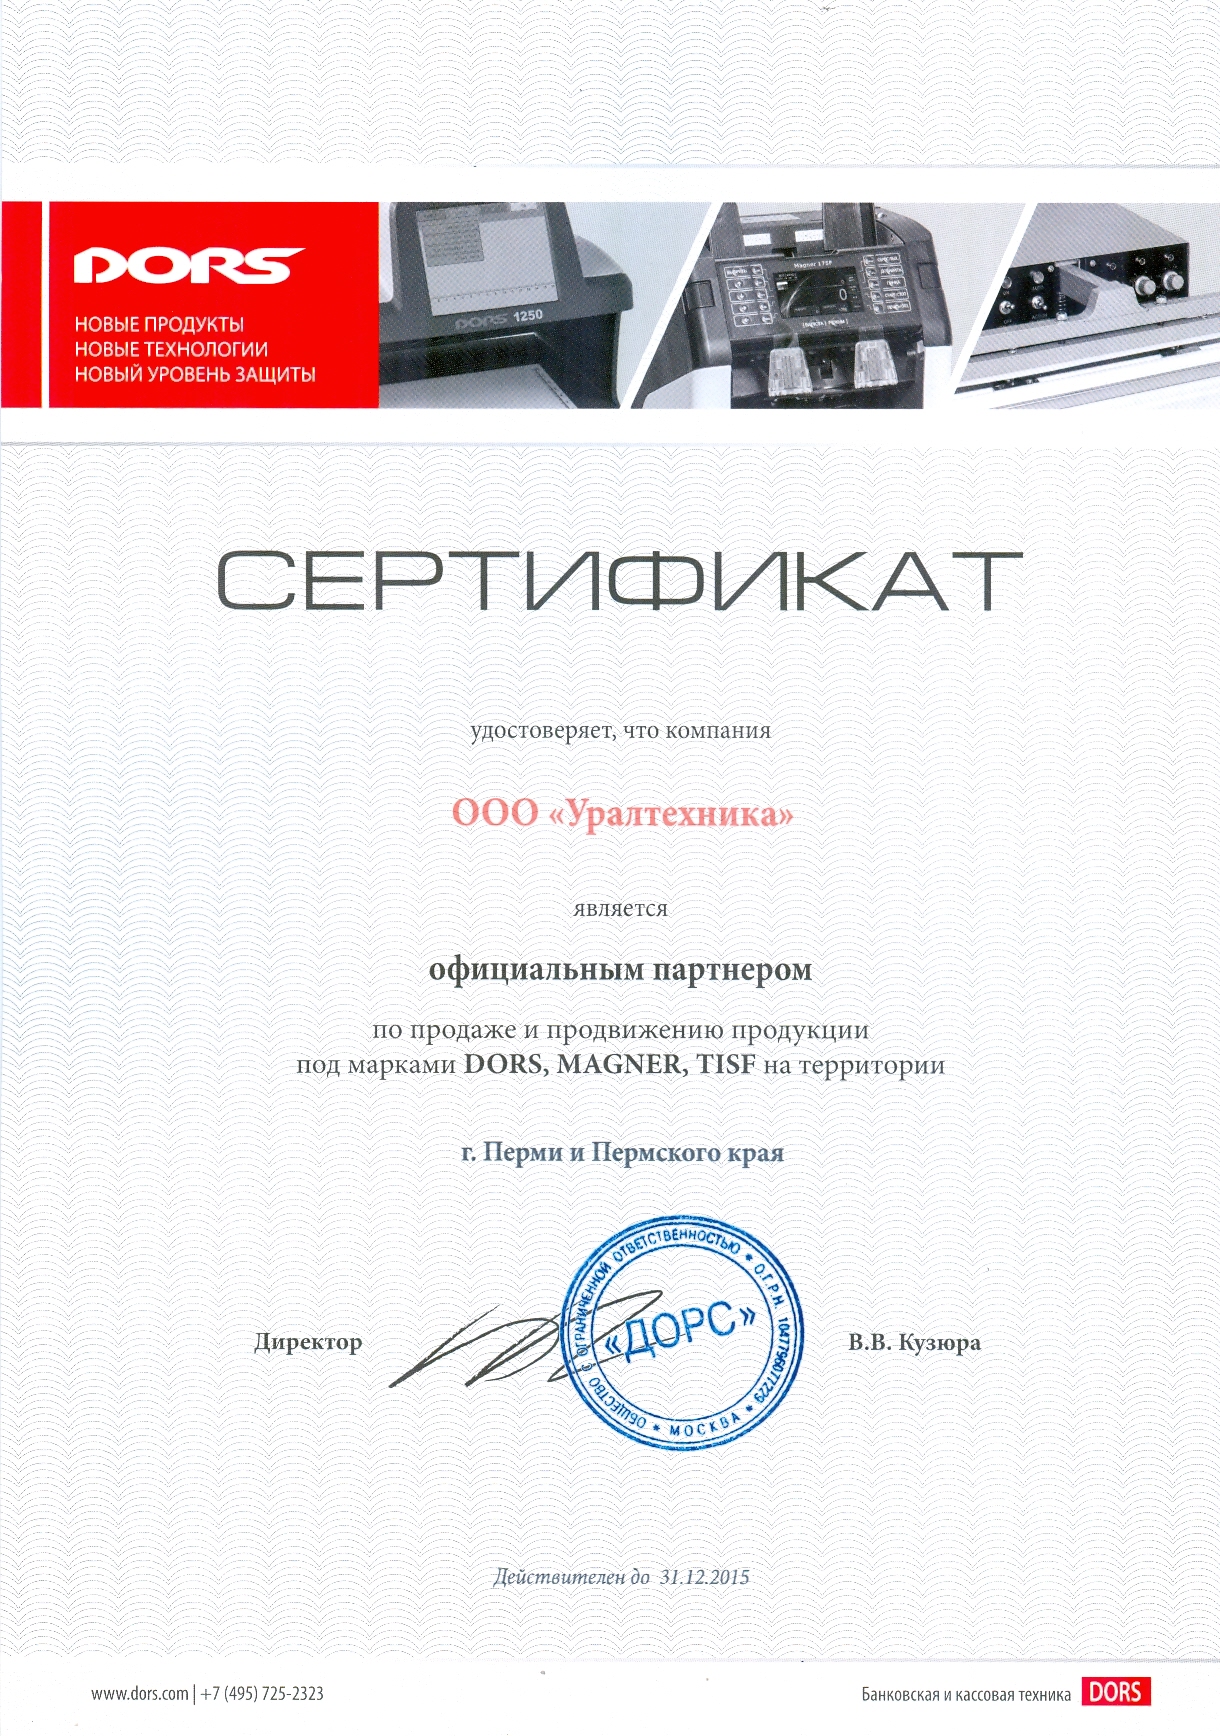 Сертификат ООО УРАЛТЕХНИКА